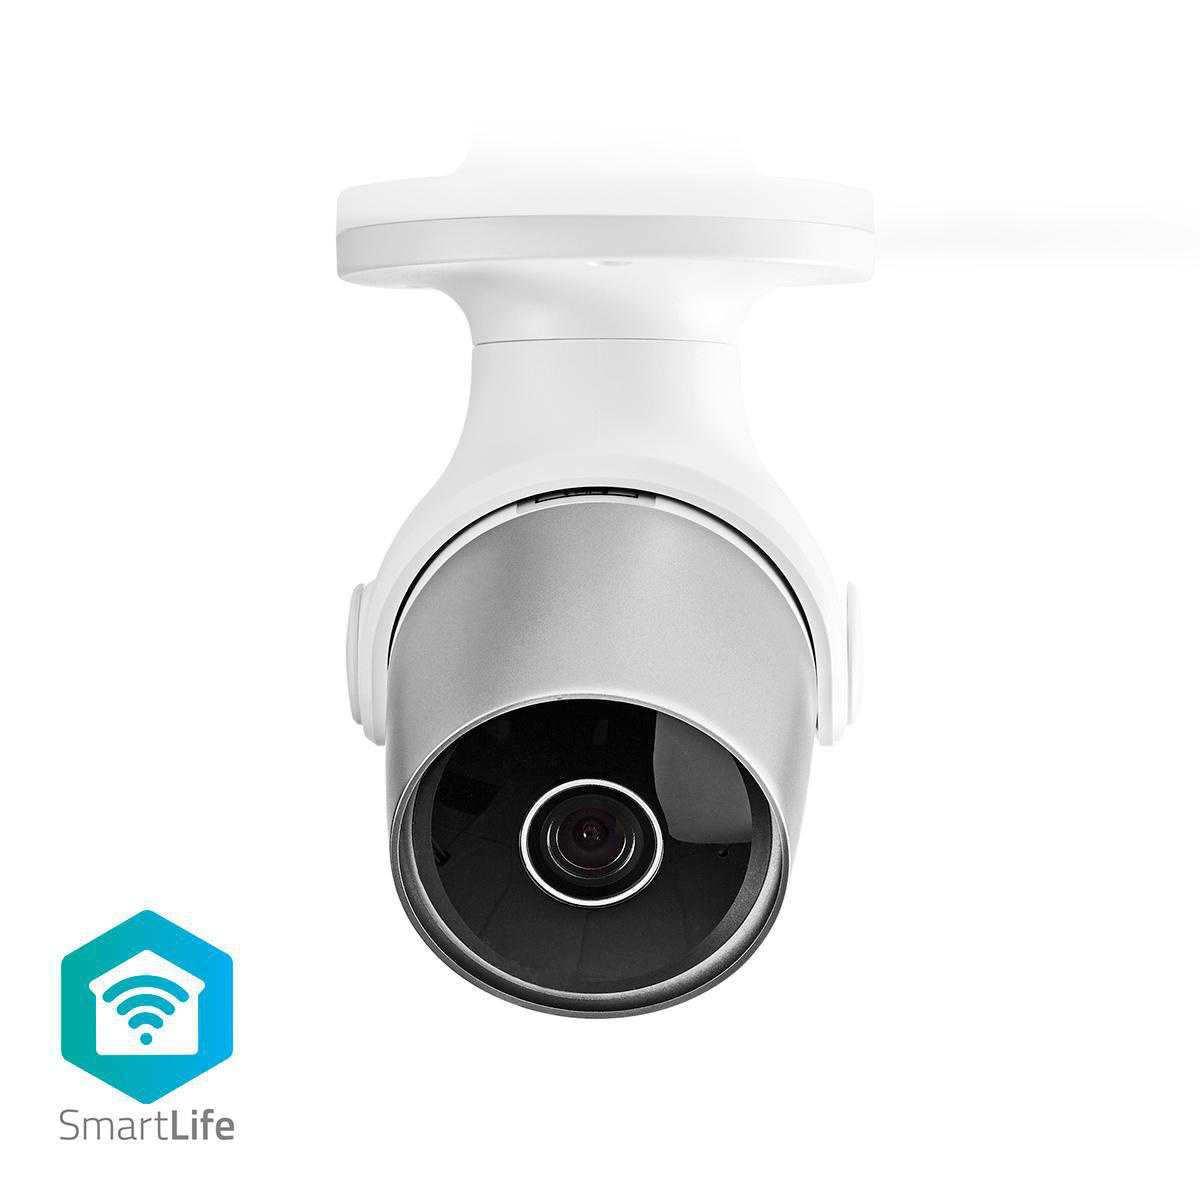 A automação residencial tornou-se muito mais fácil. Esta câmera Smart Outdoor IP fácil de usar pode ser facilmente conectada à sua rede Wi-Fi existente para monitorar os espaços externos de sua casa e gravar todos os sons ou movimentos. Ele pode ser usado